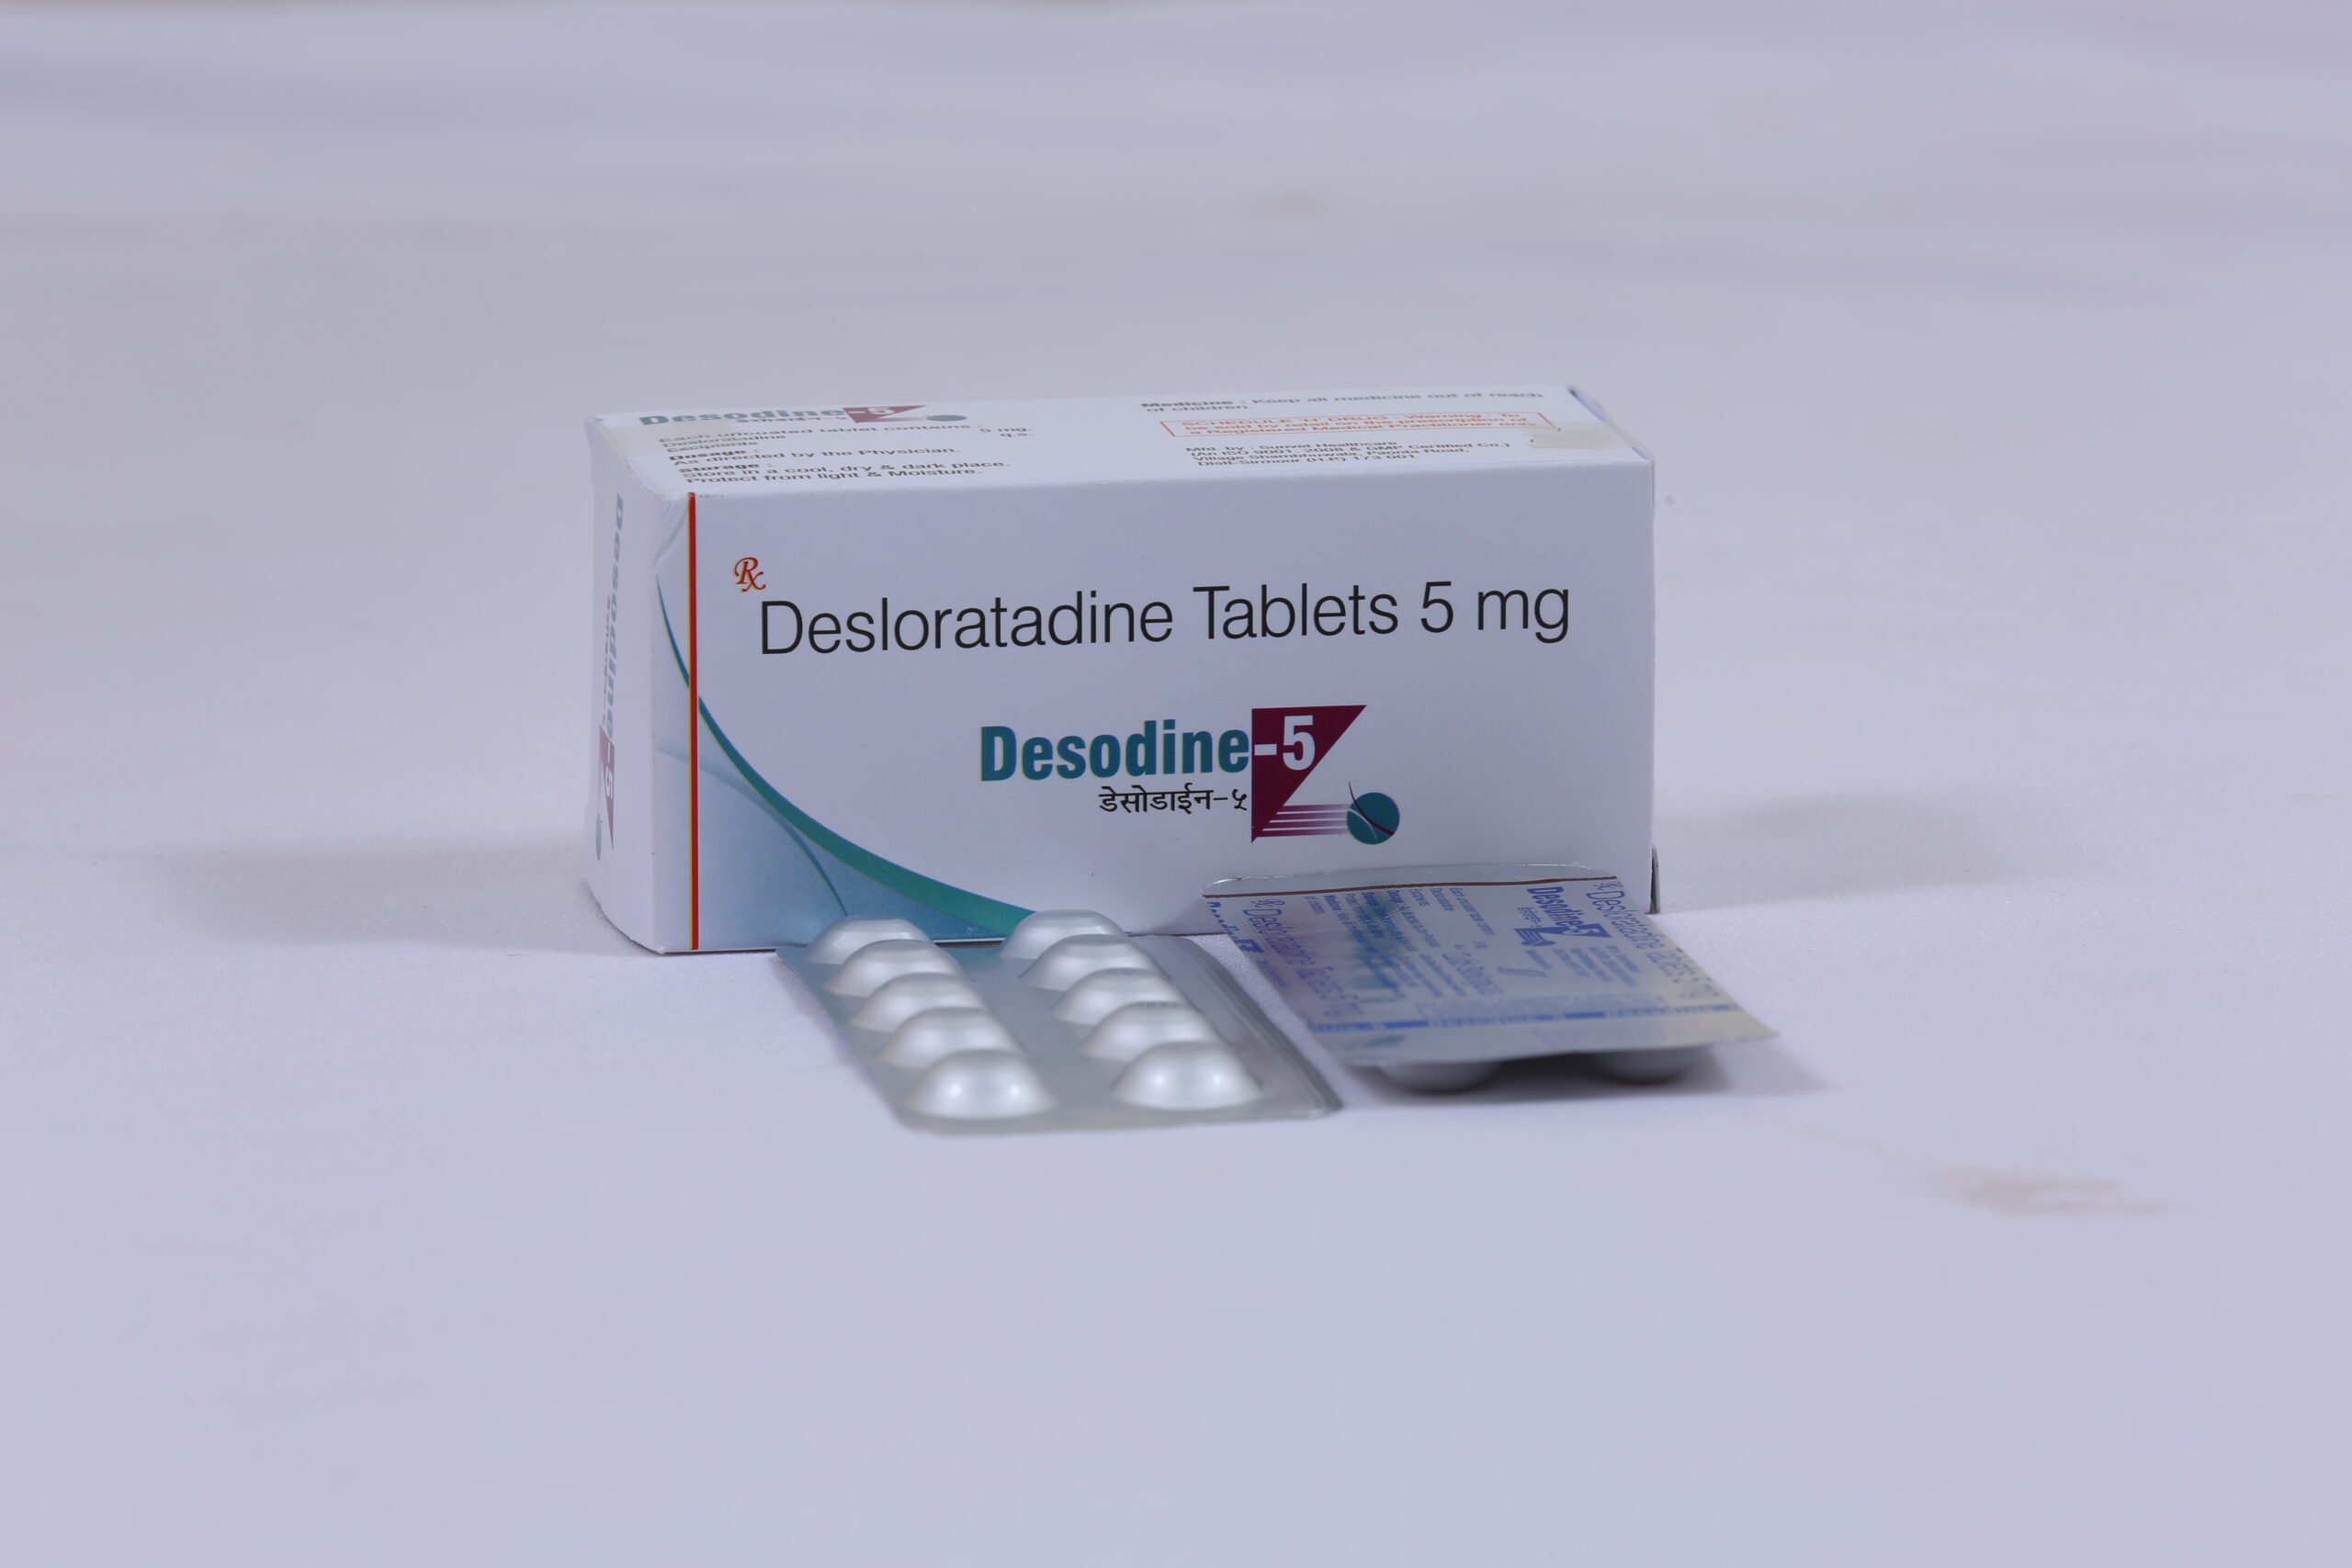 DESODINE-5 (Desloratadine 5mg)